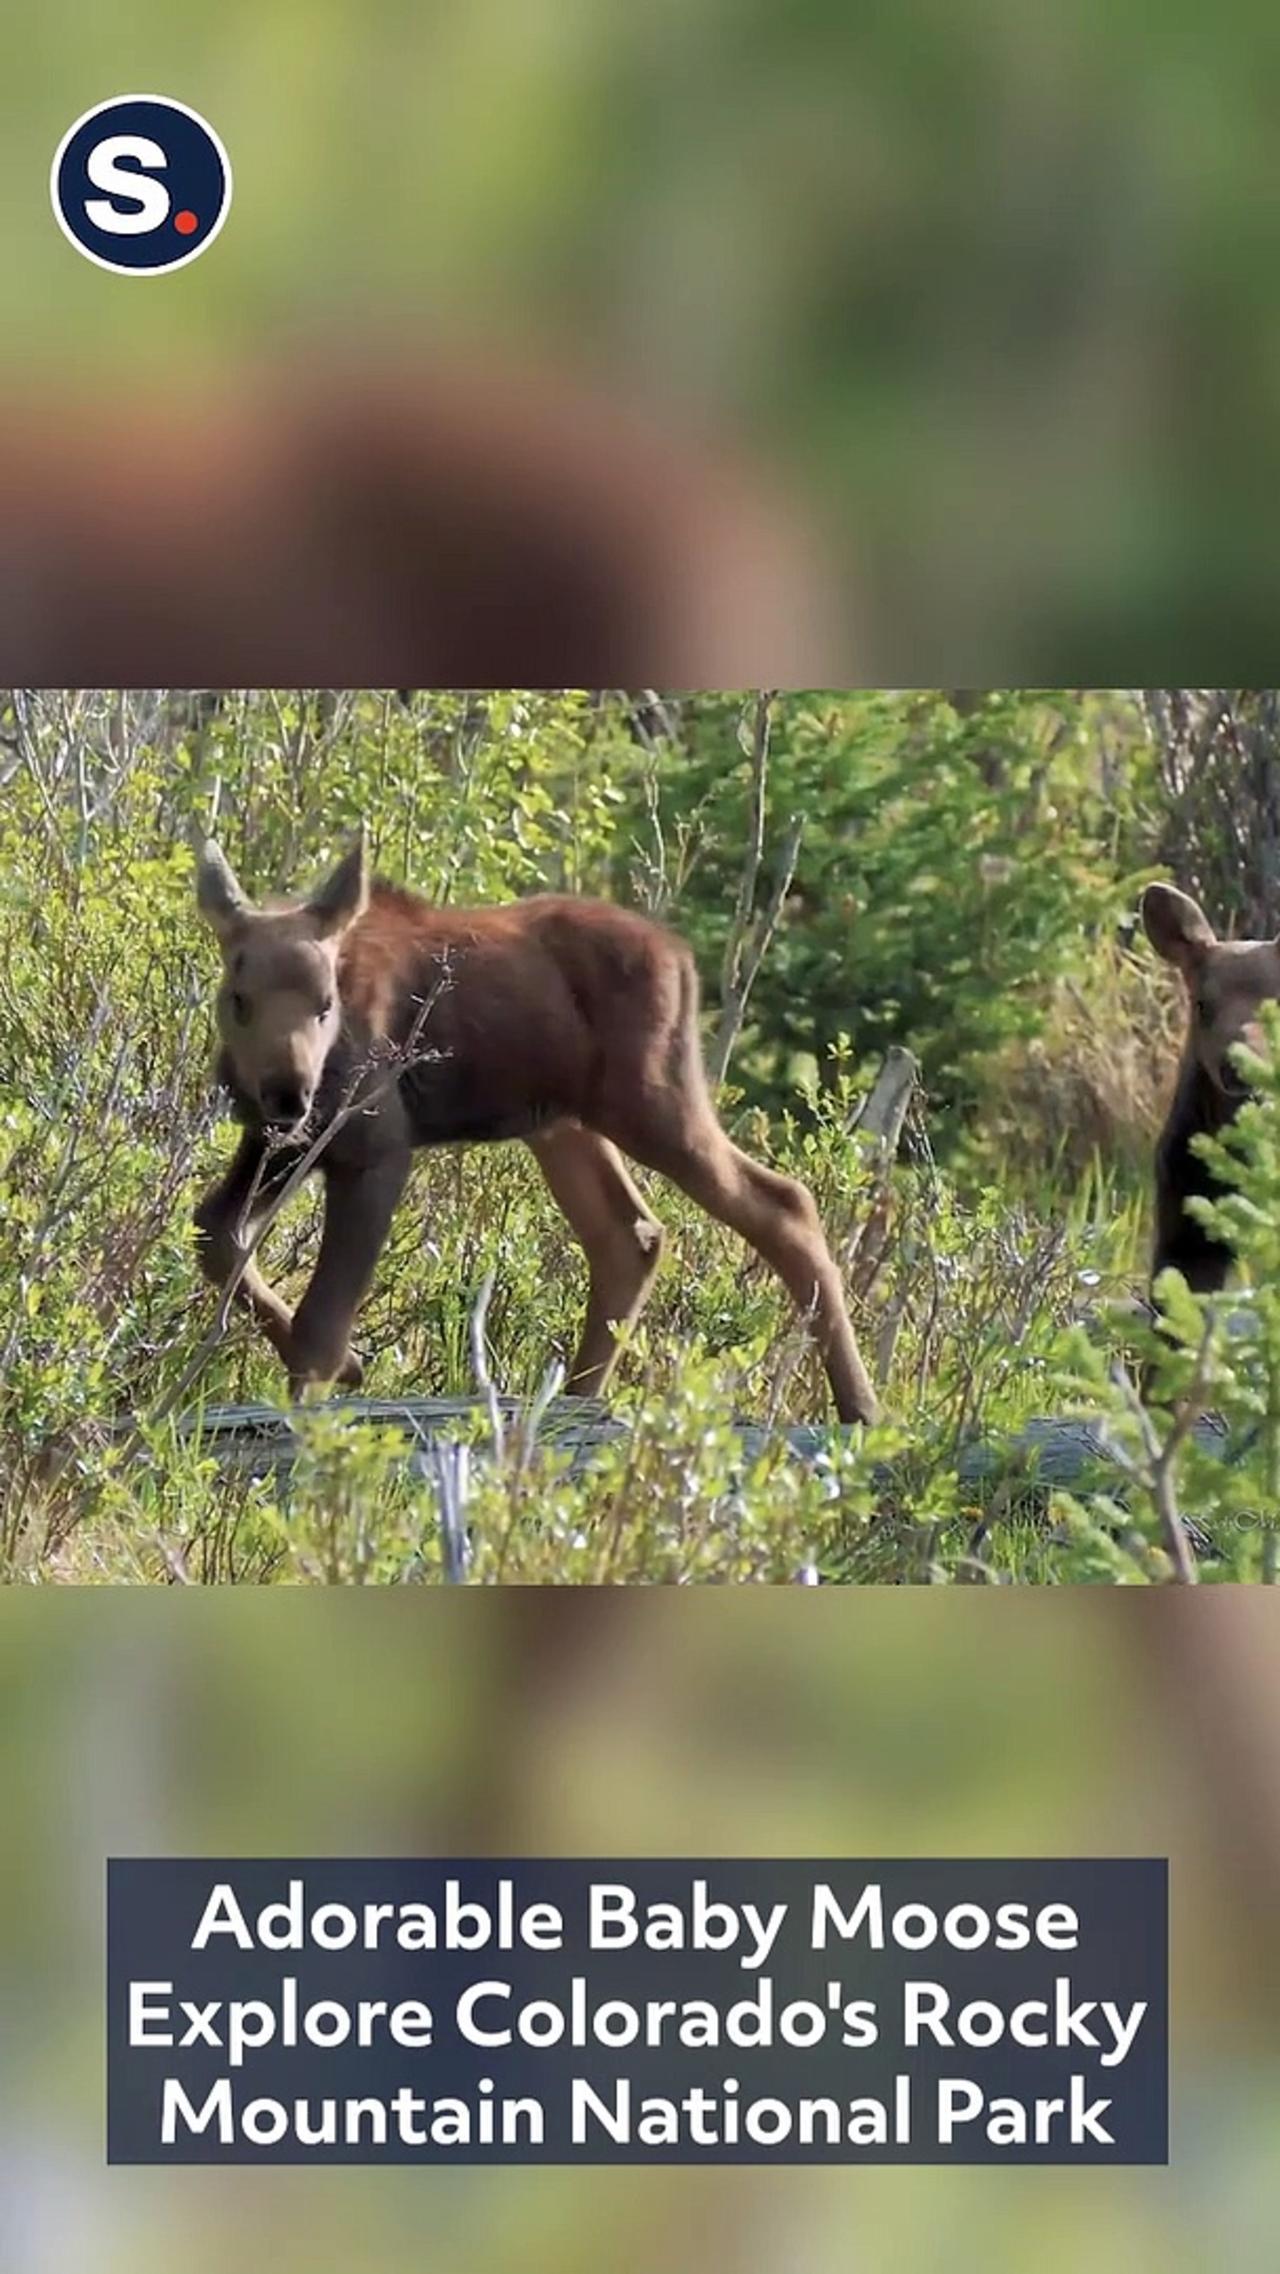 Adorable Baby Moose Explore Colorado's Rocky Mountain National Park